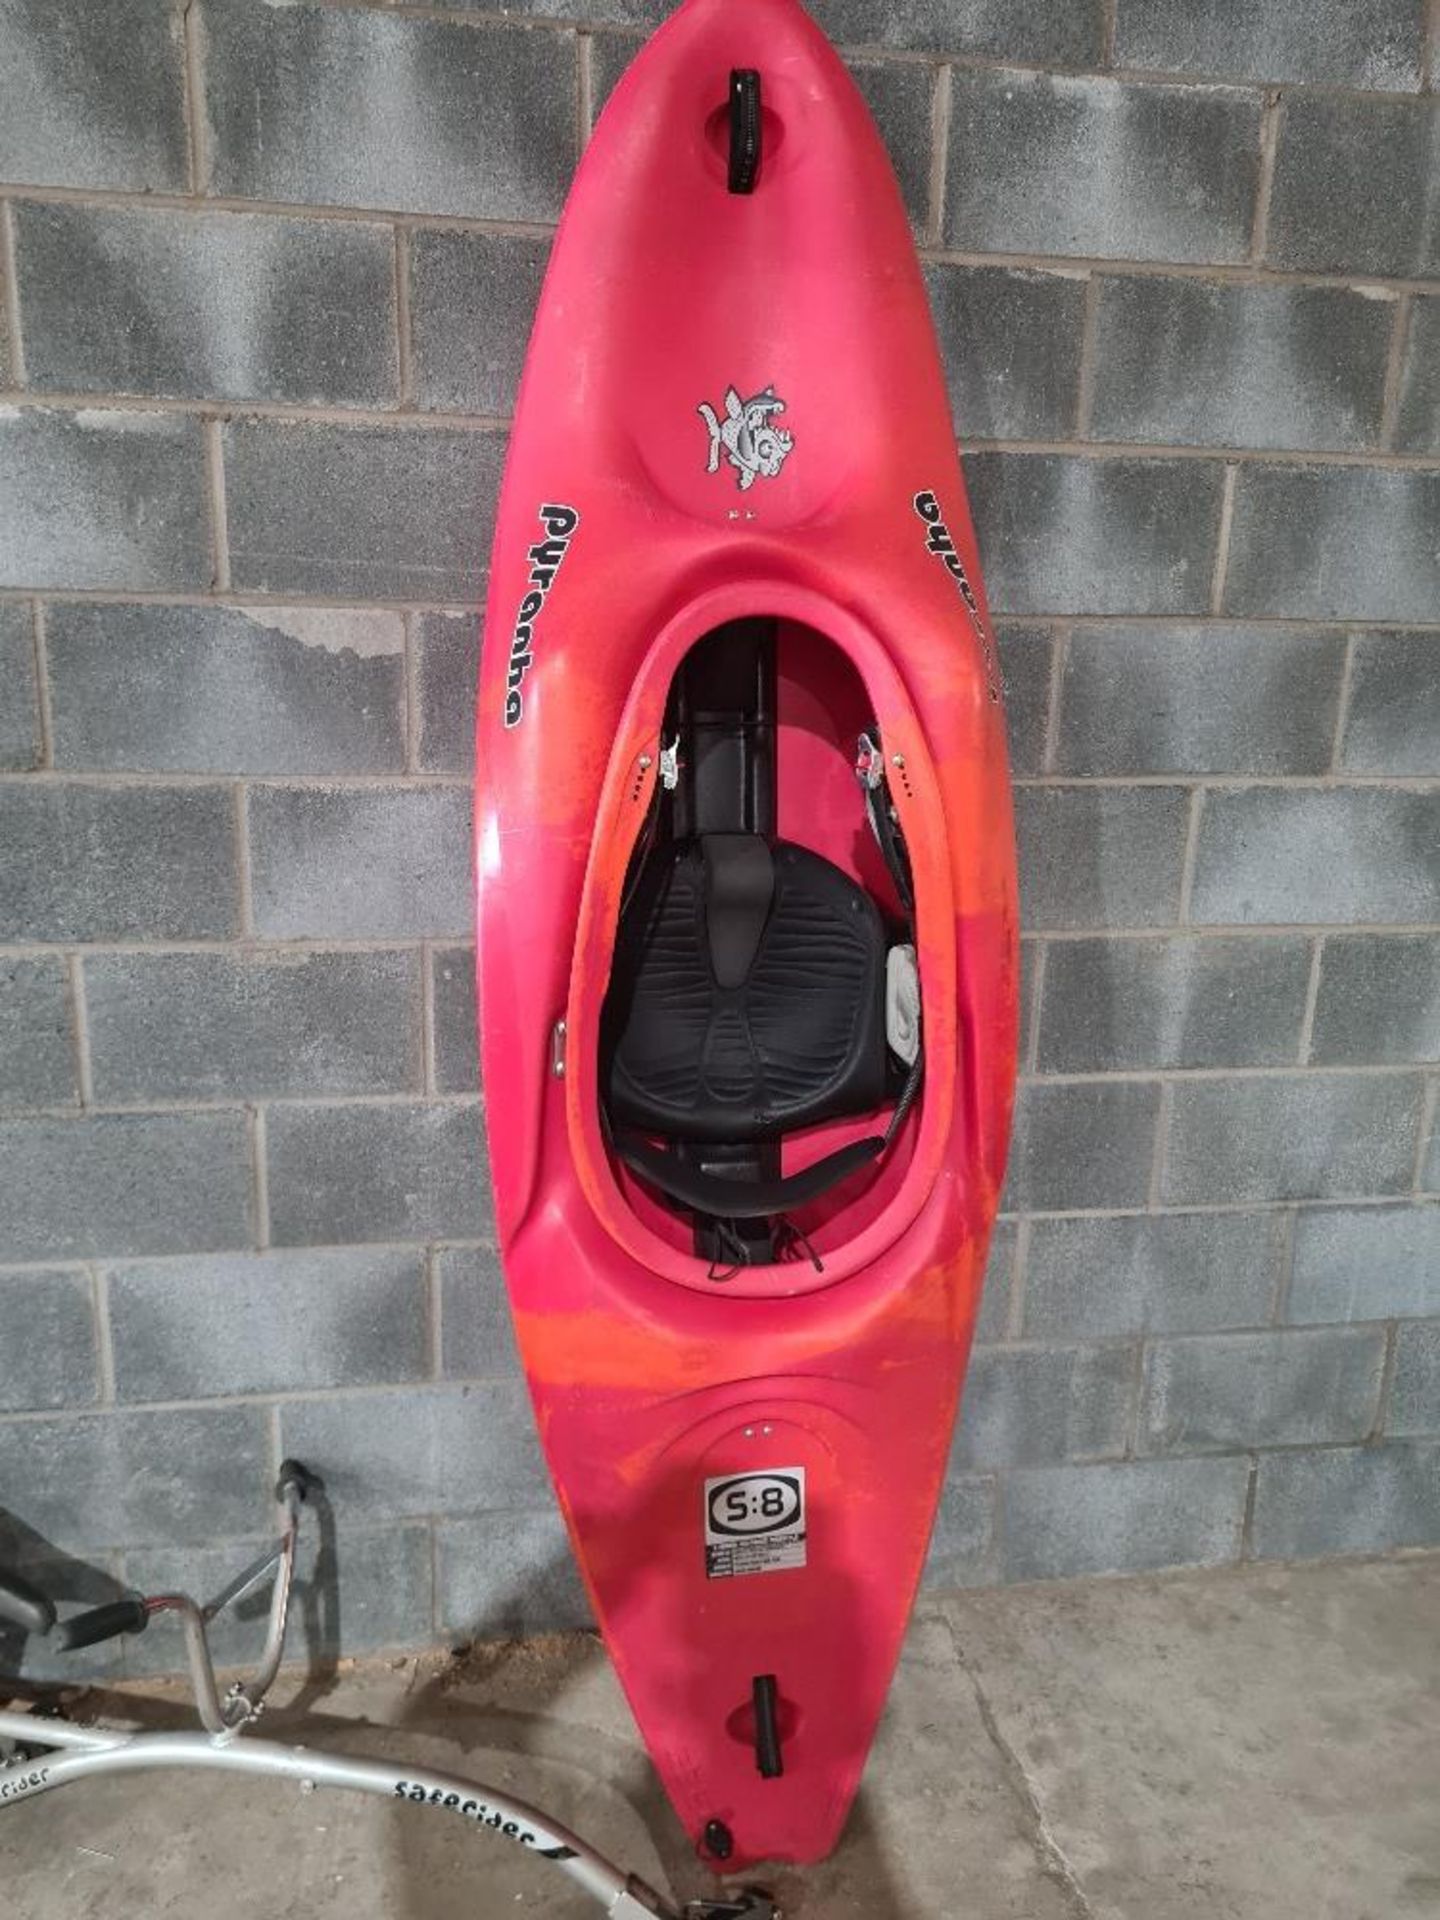 Pyranha S:8 kayak. NO VAT.